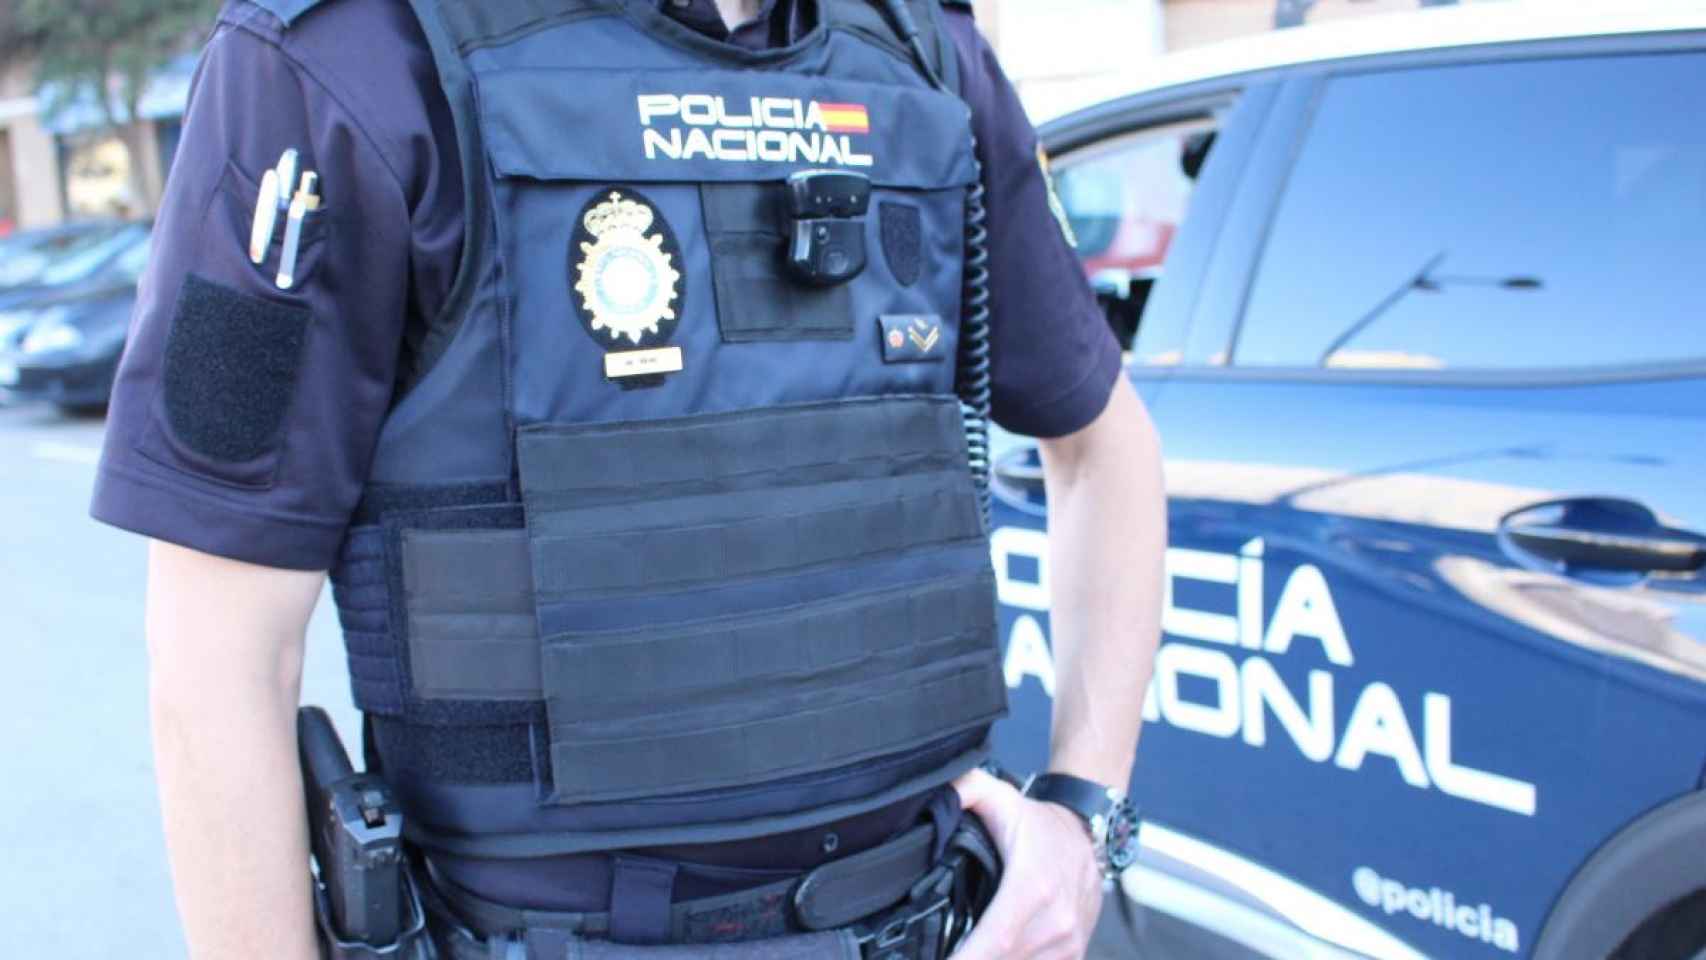 Policía Nacional de Valladolid